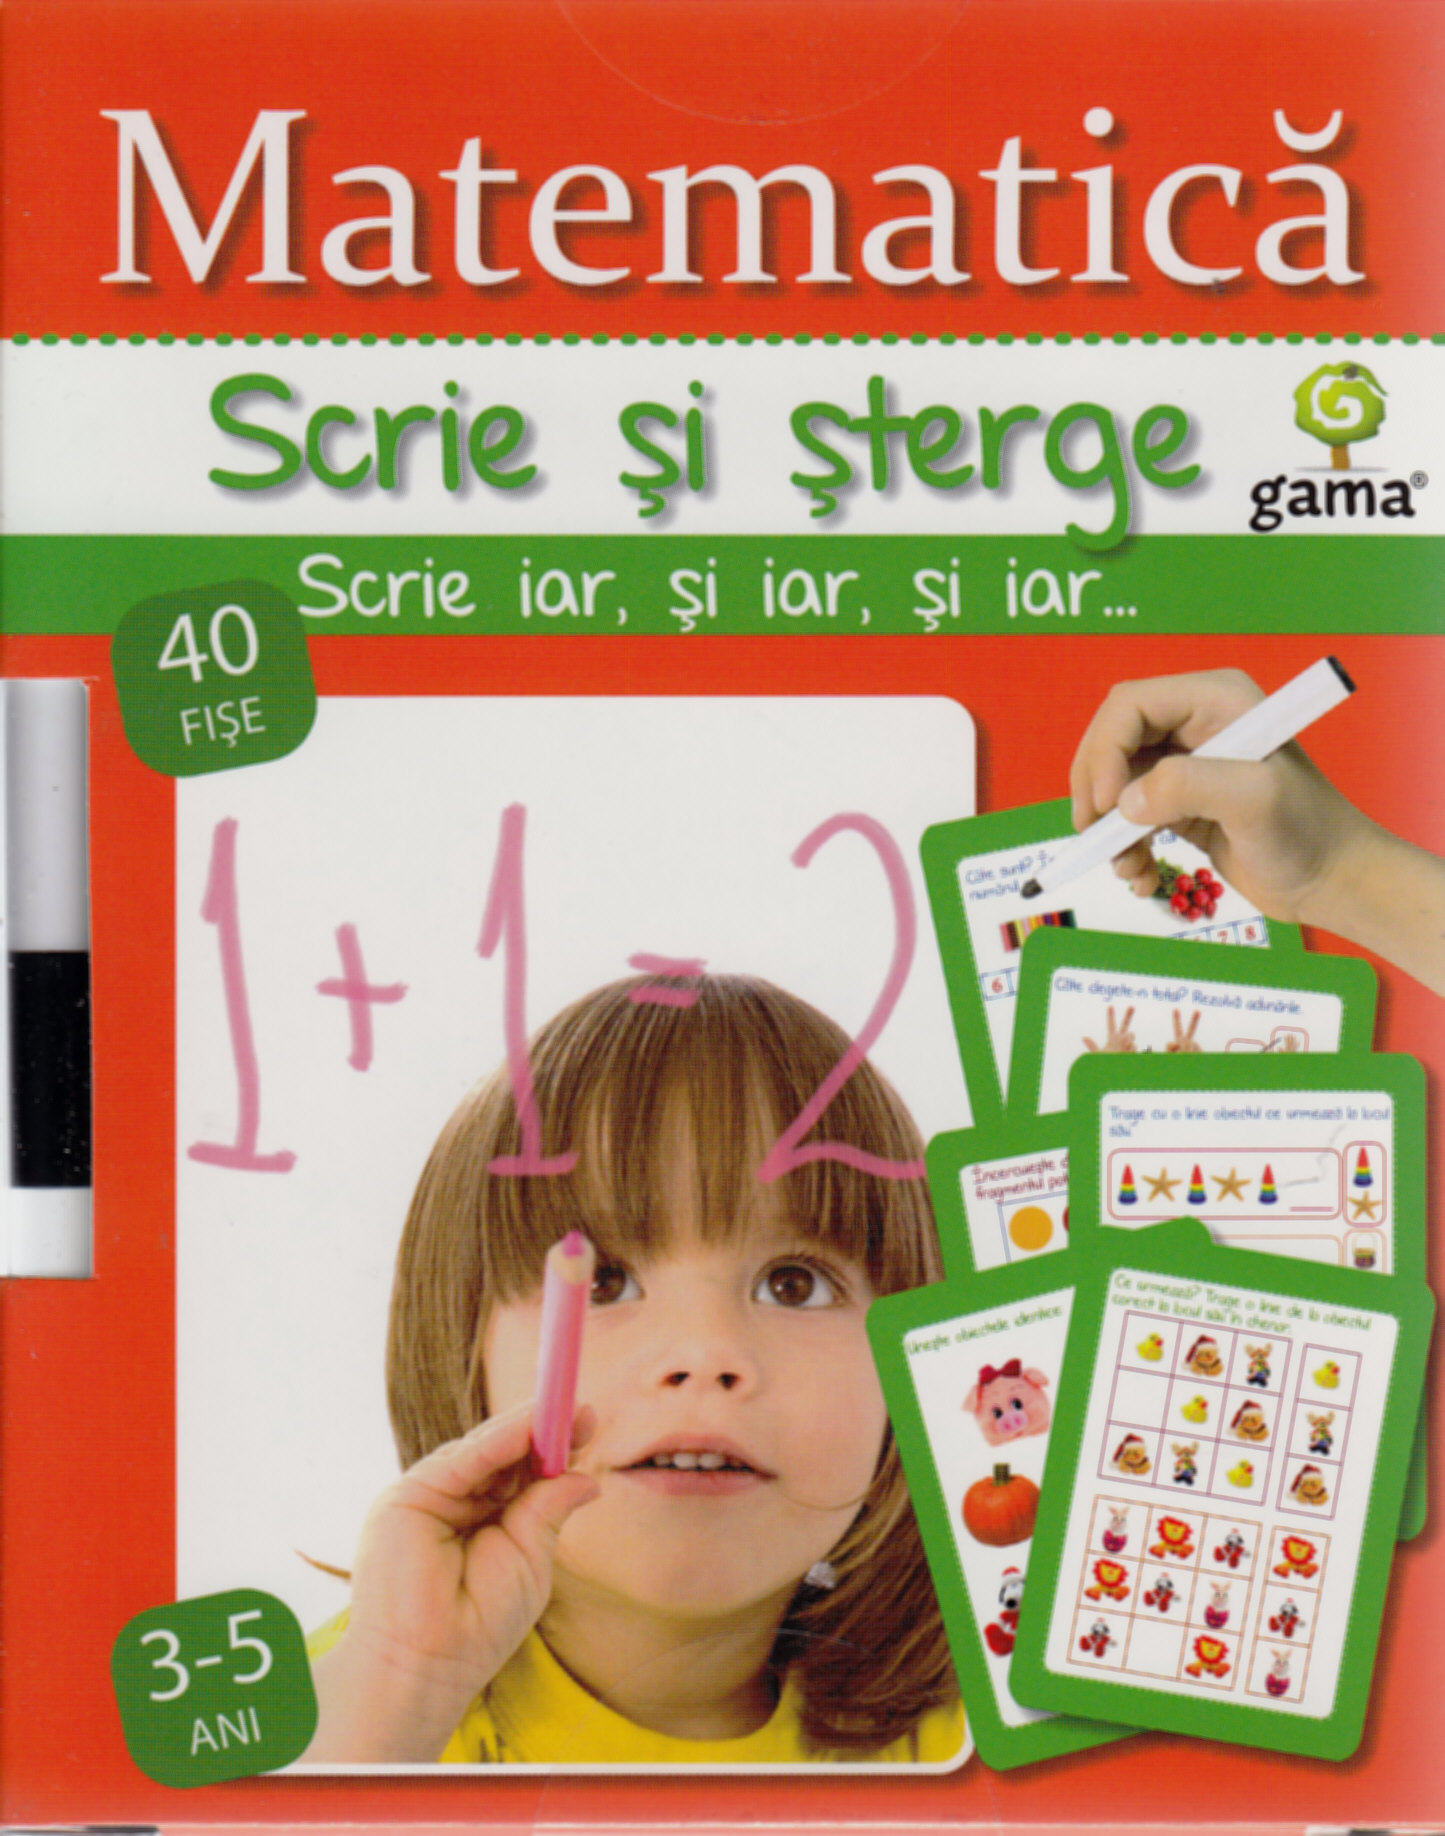 Scrie Si Sterge - Matematica 3-5 Ani